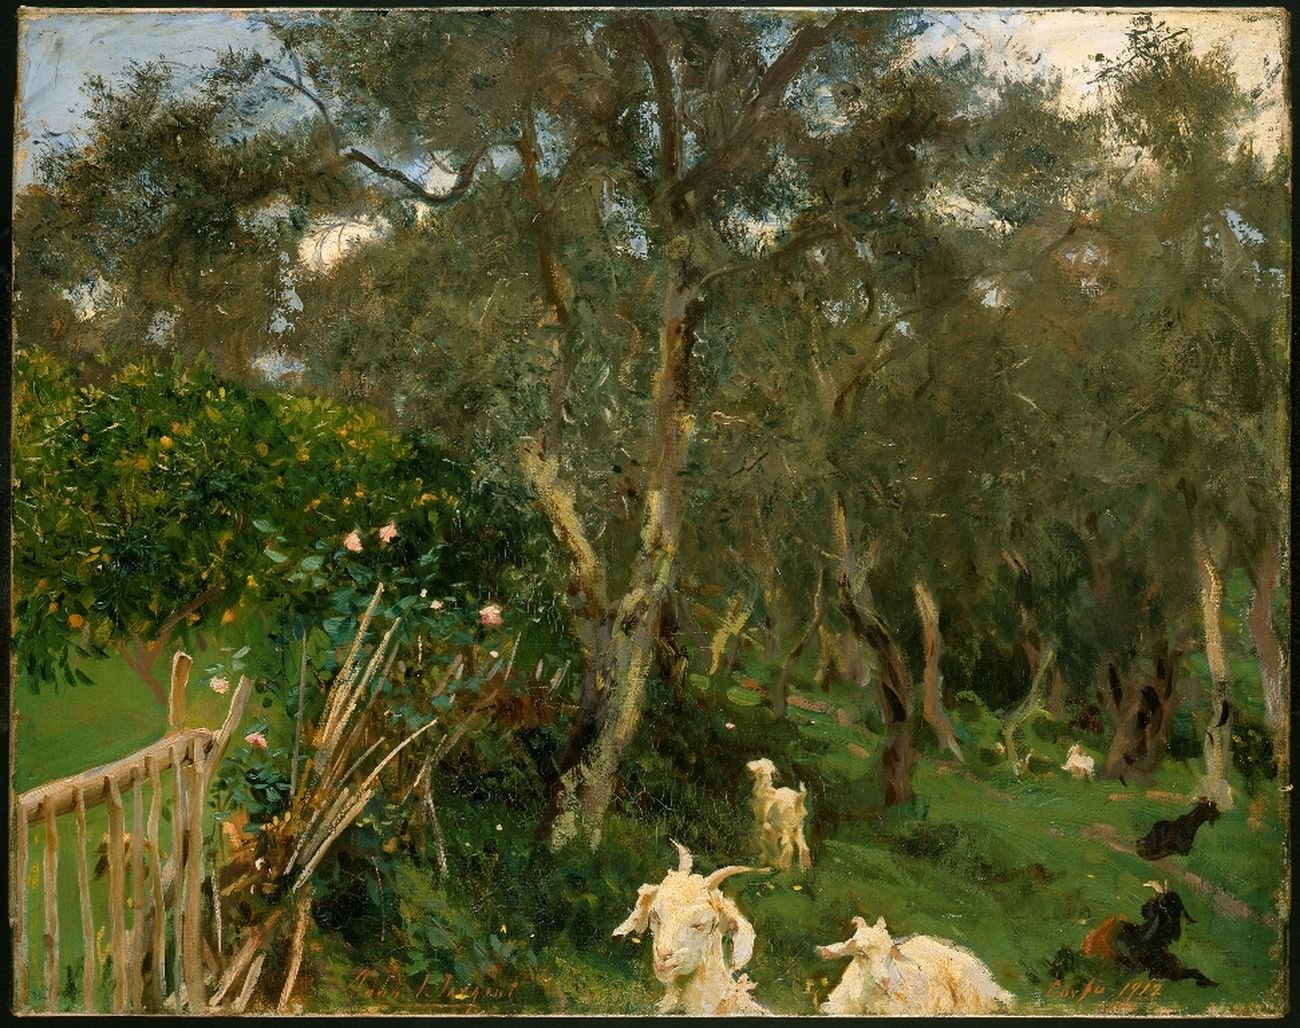 John Singer Sargent, Olives in Corfu, 1909 ca. © The Fitzwilliam Museum, Cambridge